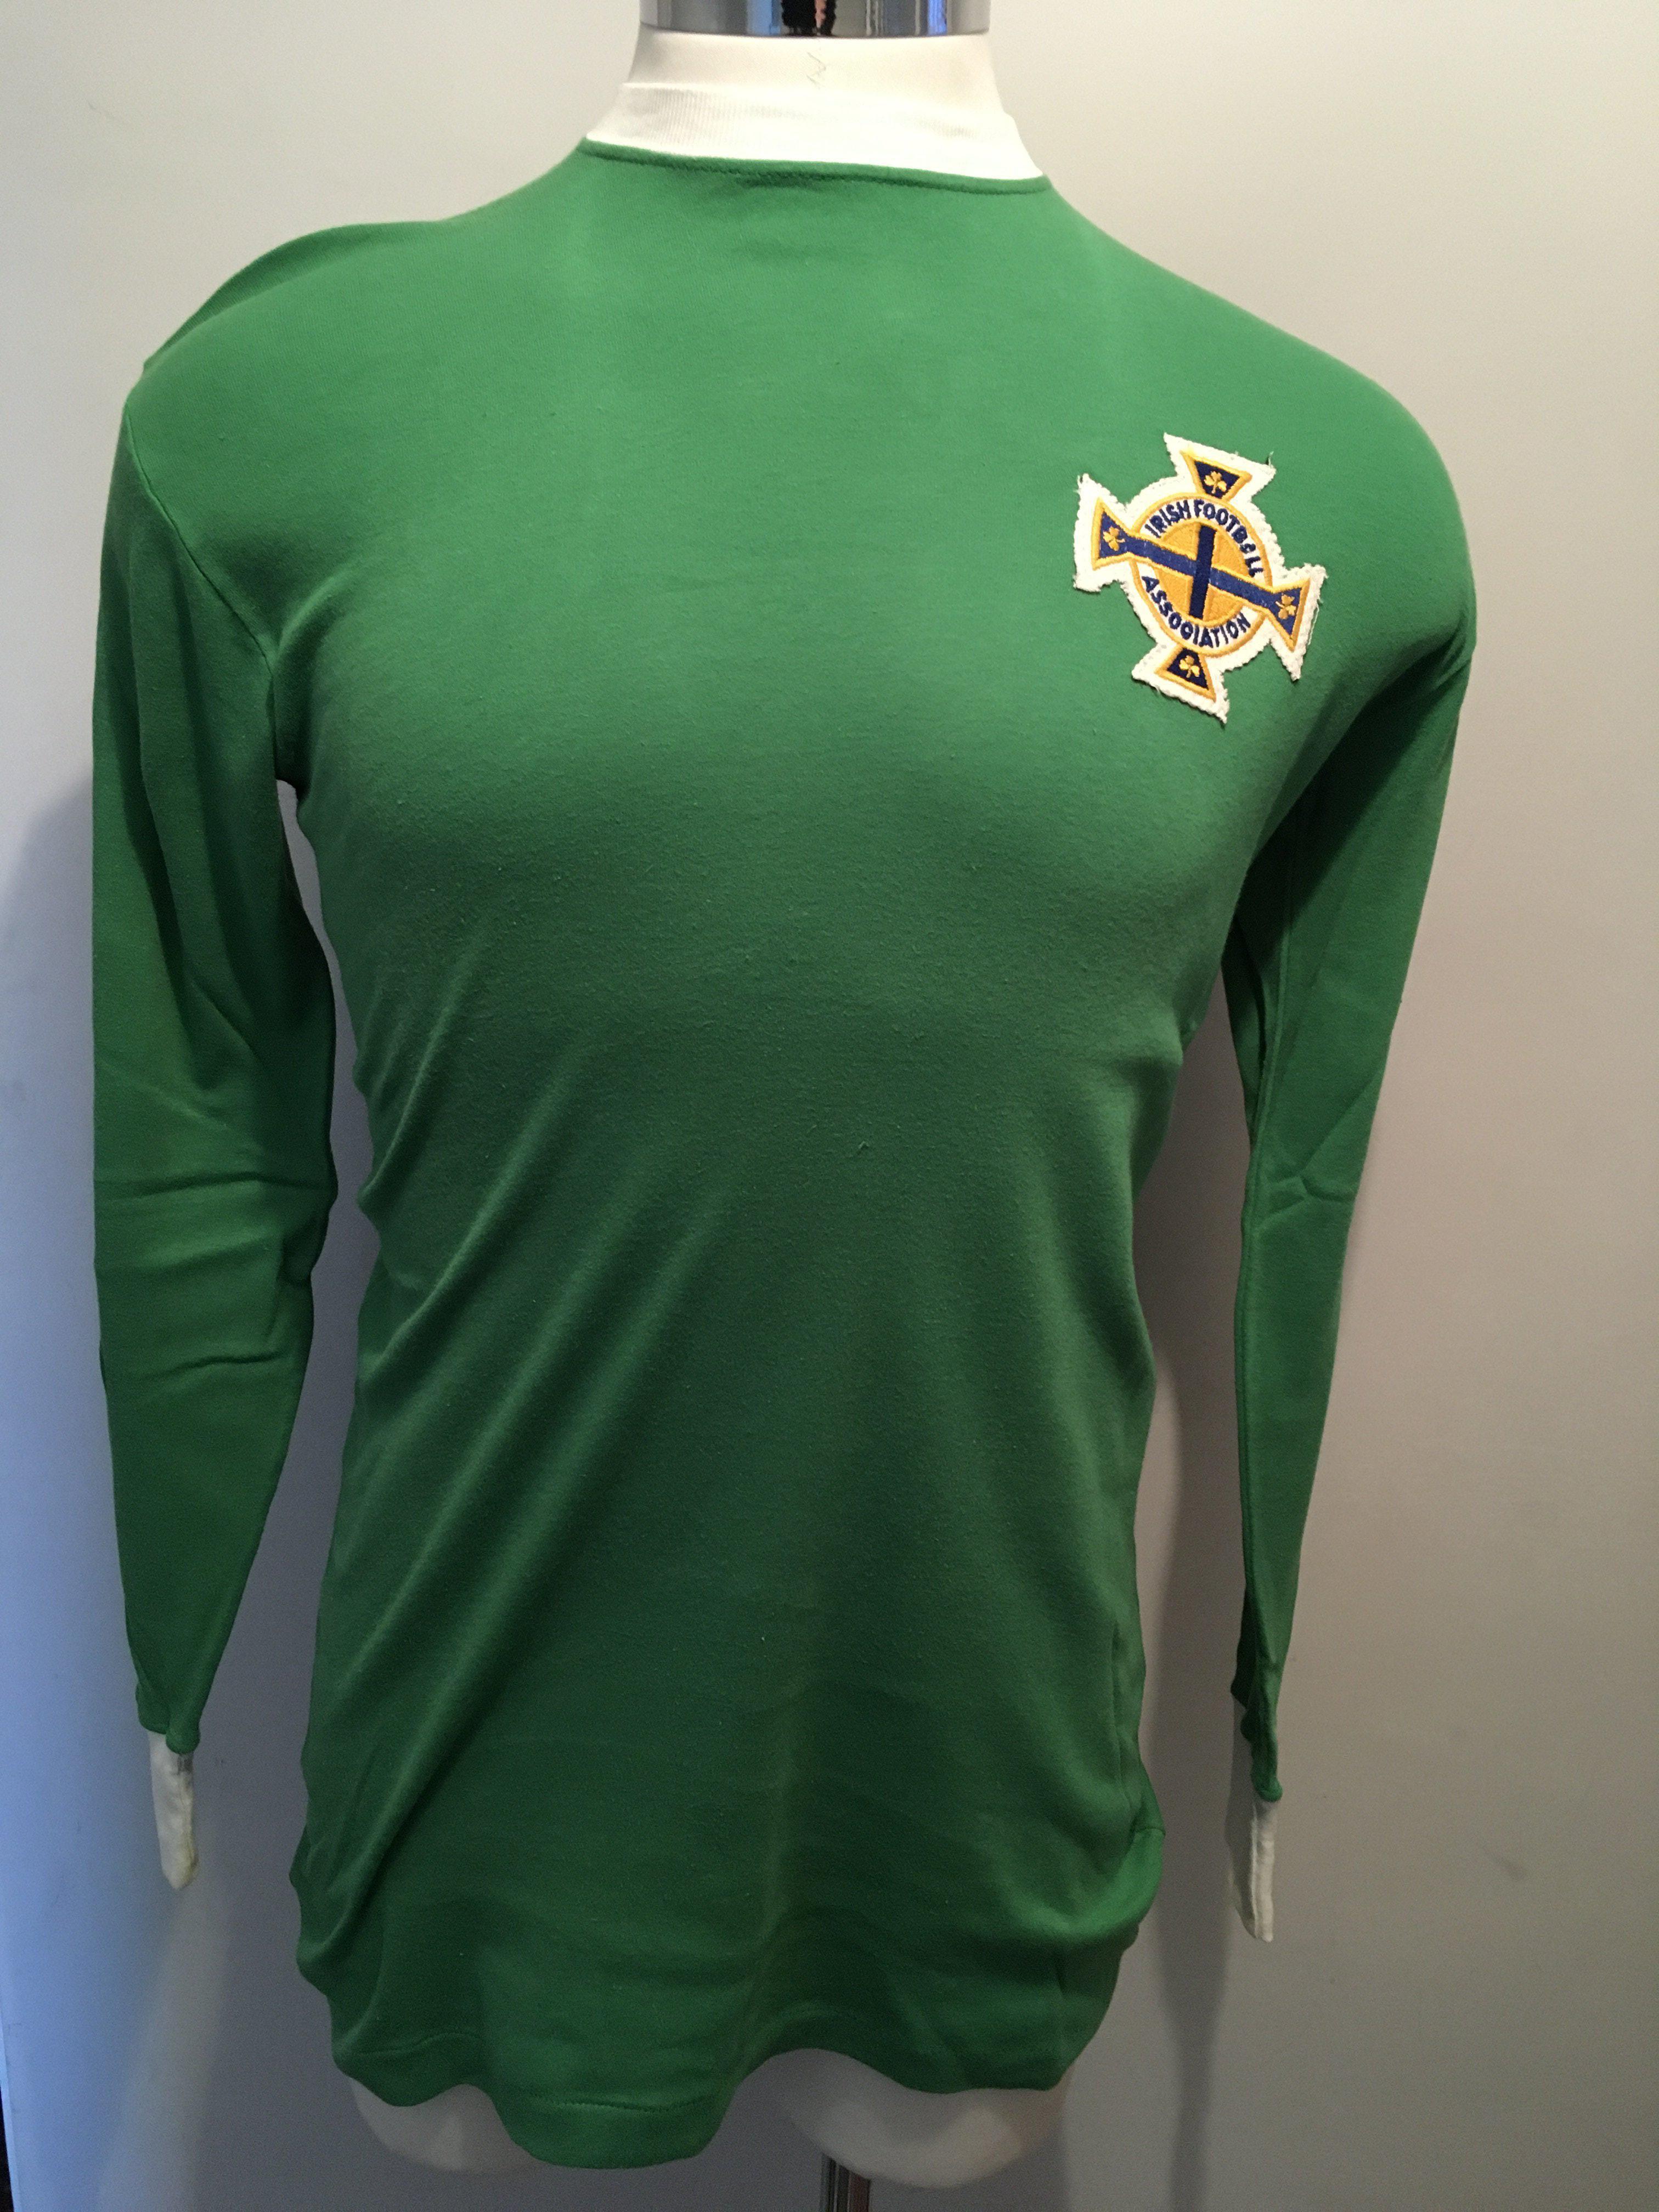 Terry Neill Northern Ireland Match Worn Football Shirt: Superb condition green long sleeve shirt